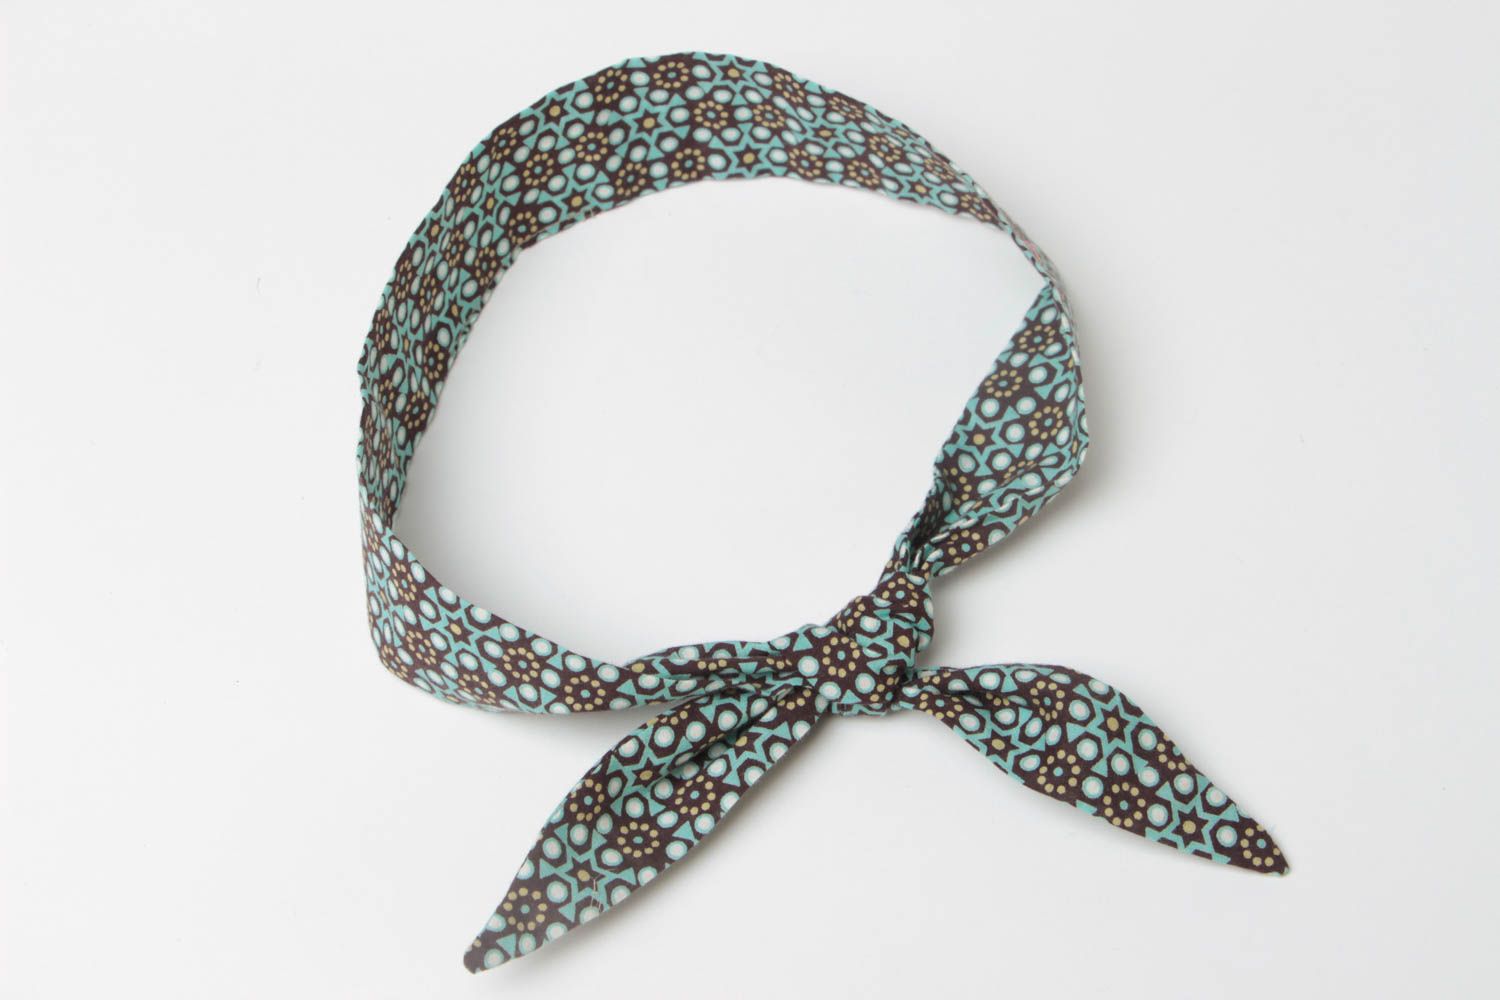 Гибкая повязка на голову из ткани с бантиком цветная красивая модная хэнд мейд фото 4